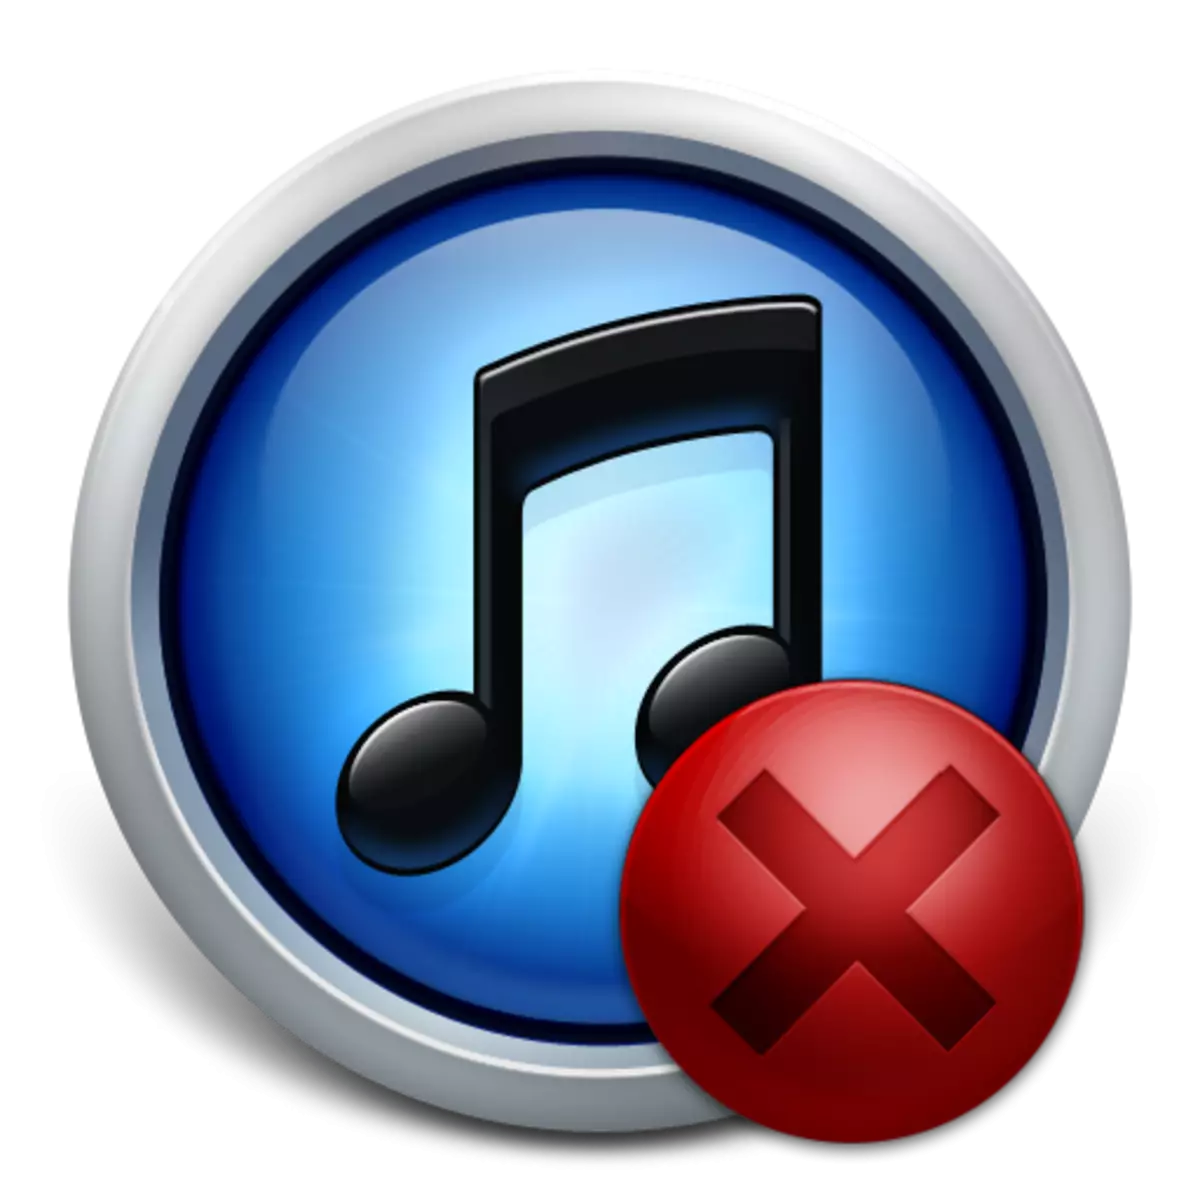 iTunes: Error 11